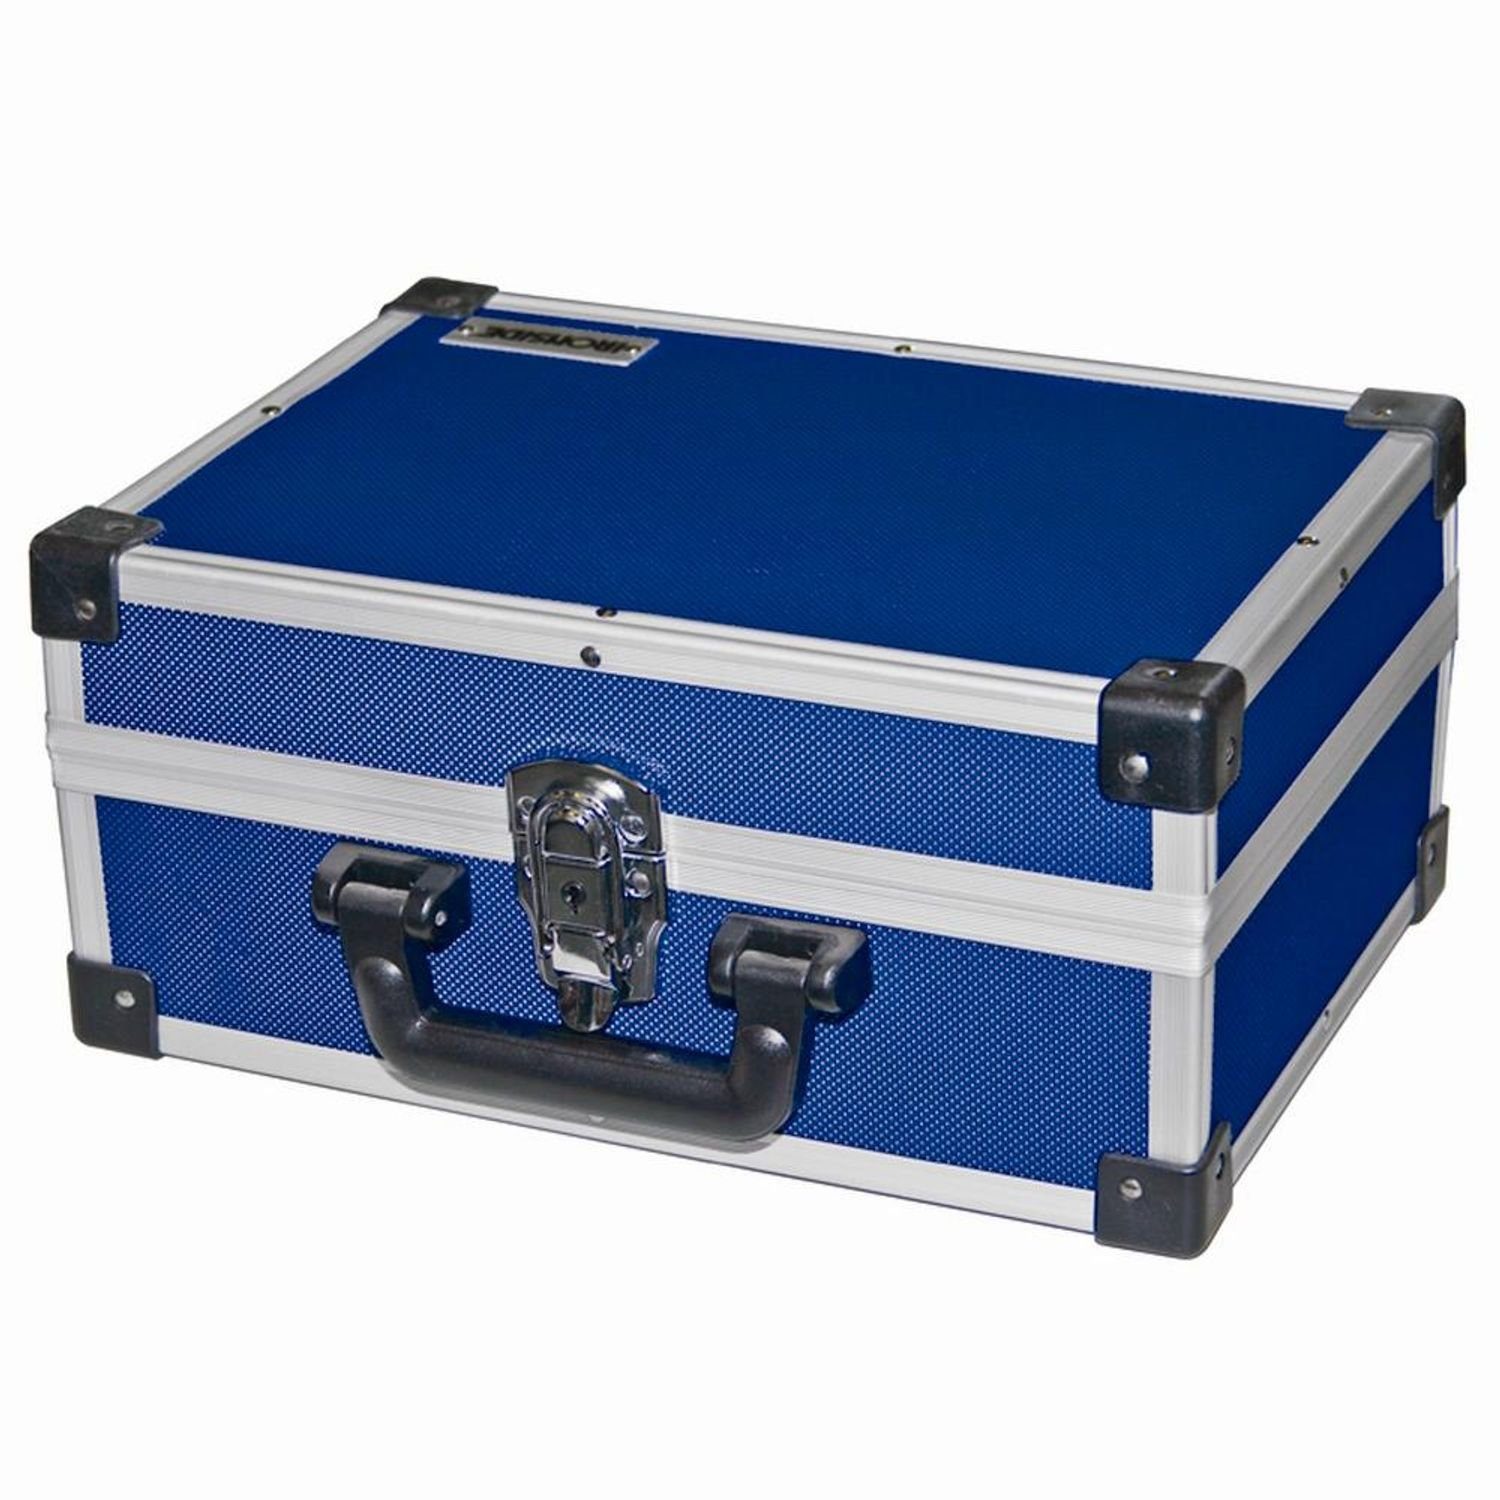 IRONSIDE Werkzeugkoffer Alu Werkzeugkoffer blau 330x230x150mm Werkzeugkiste Werkzeugkasten Wer